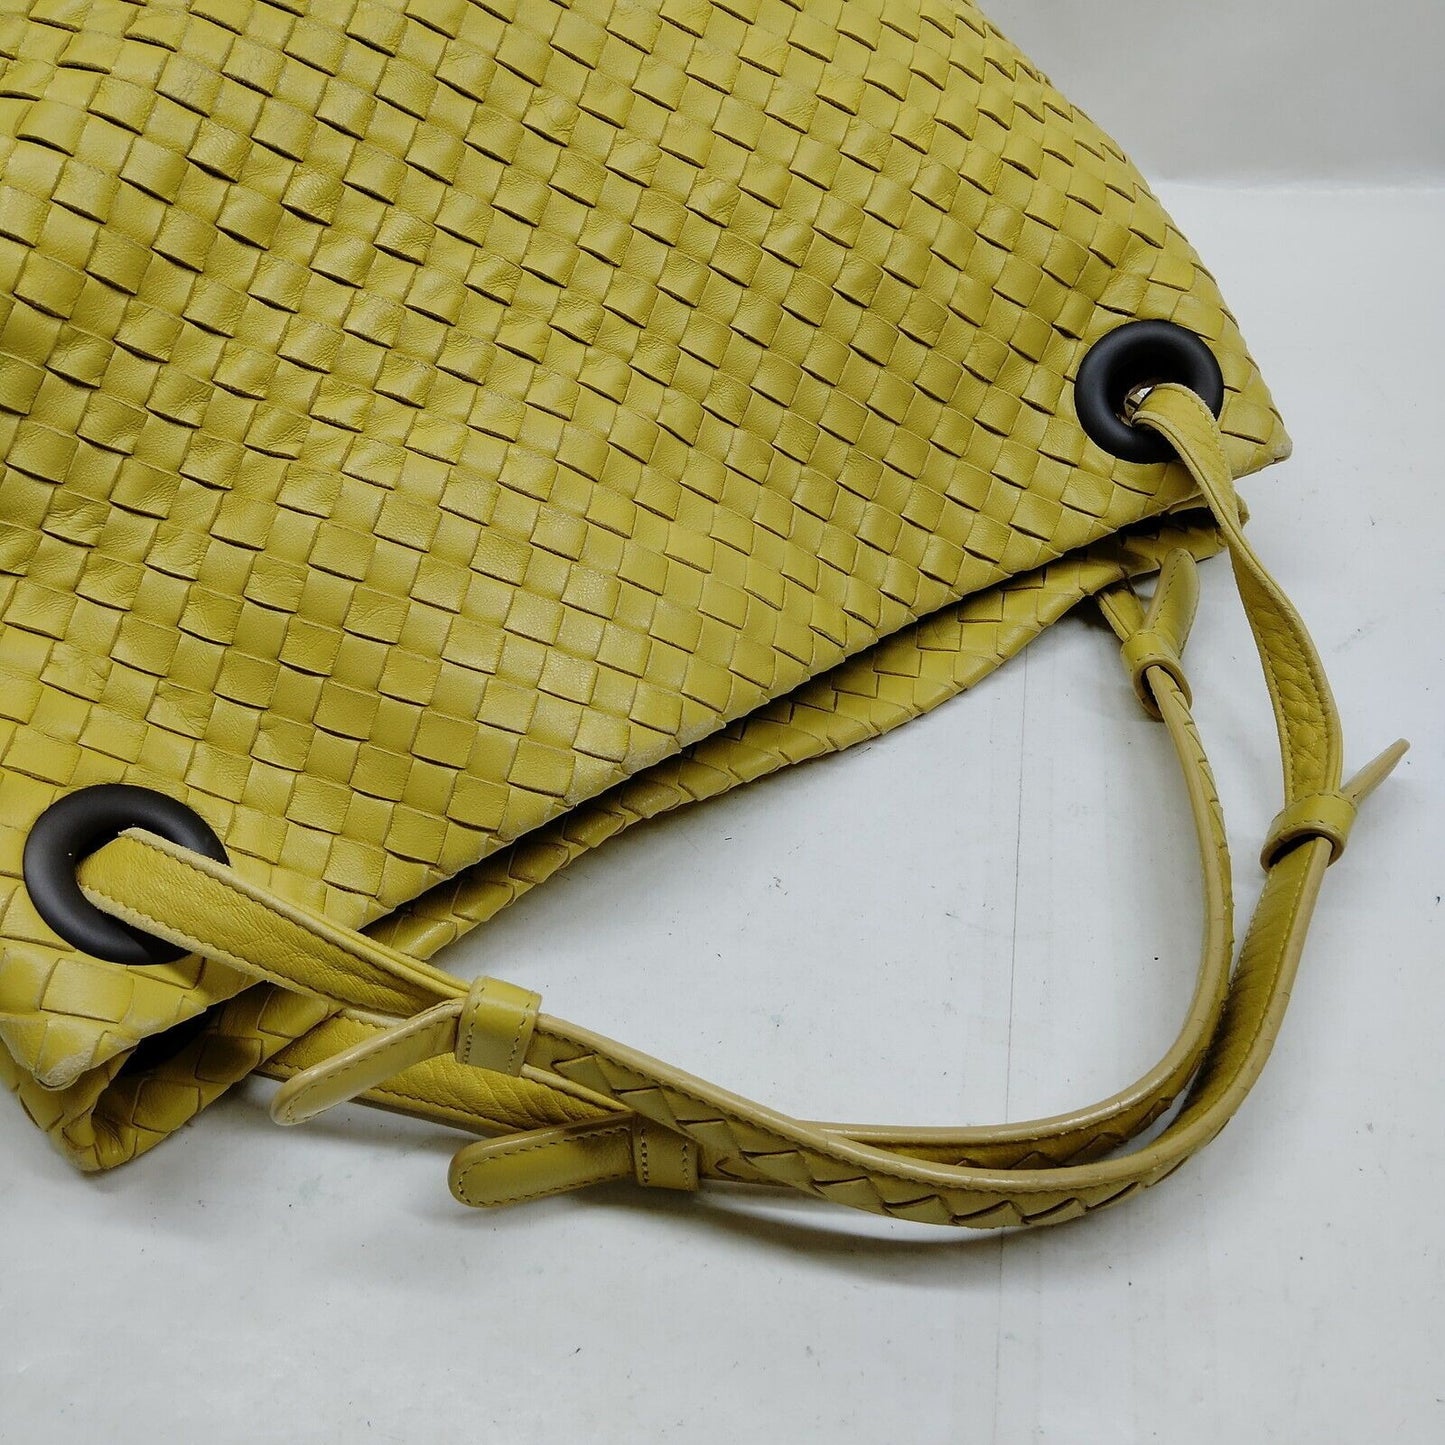 Bottega Veneta intrecciato yellow leather XL tote style purse